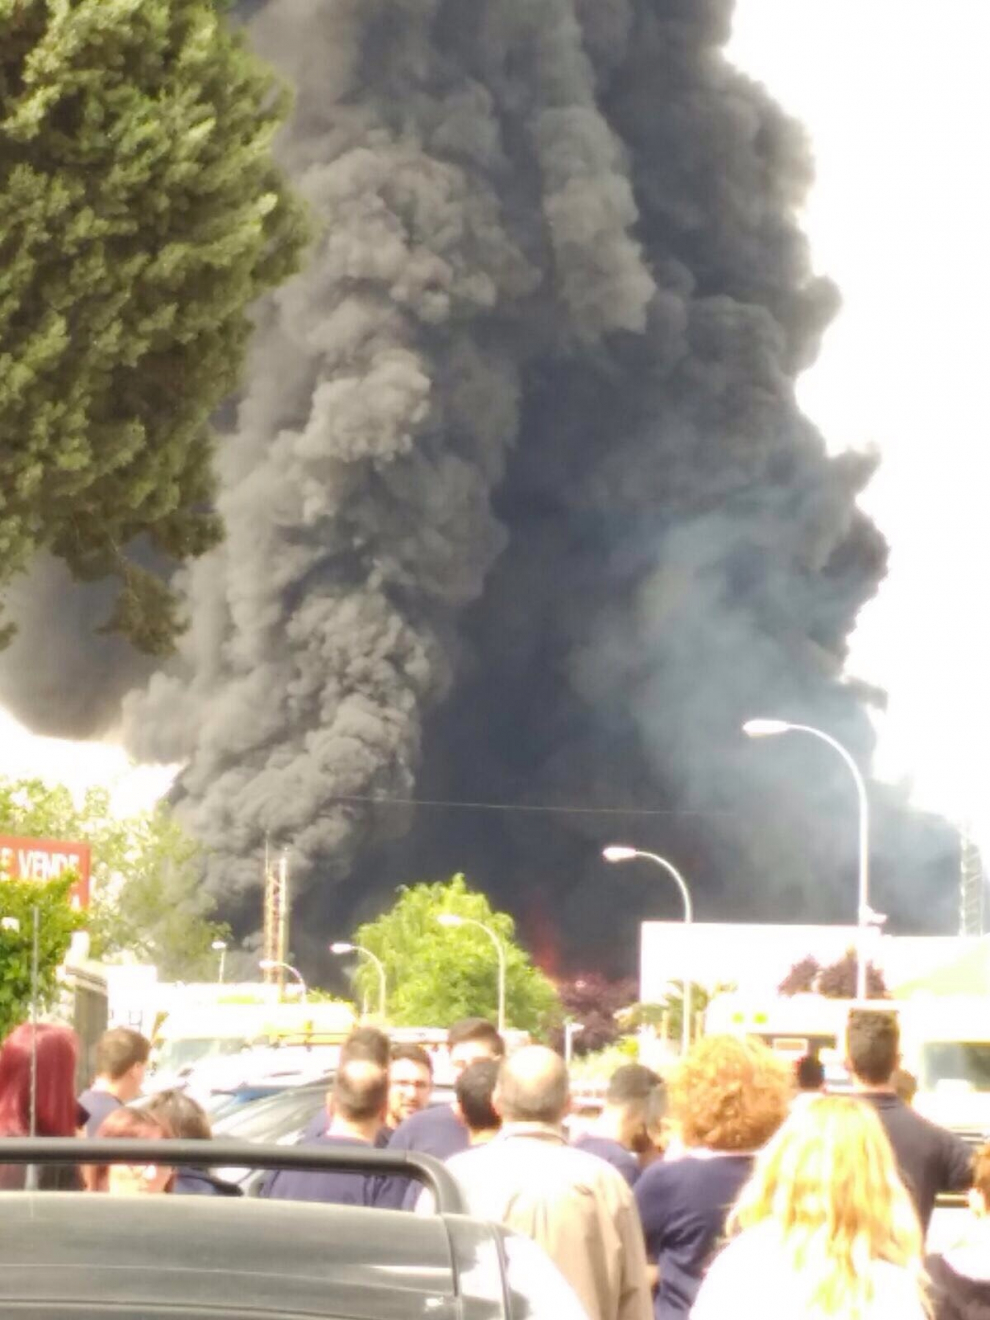 Imágenes de la gran explosión de una nave de productos químicos en Arganda